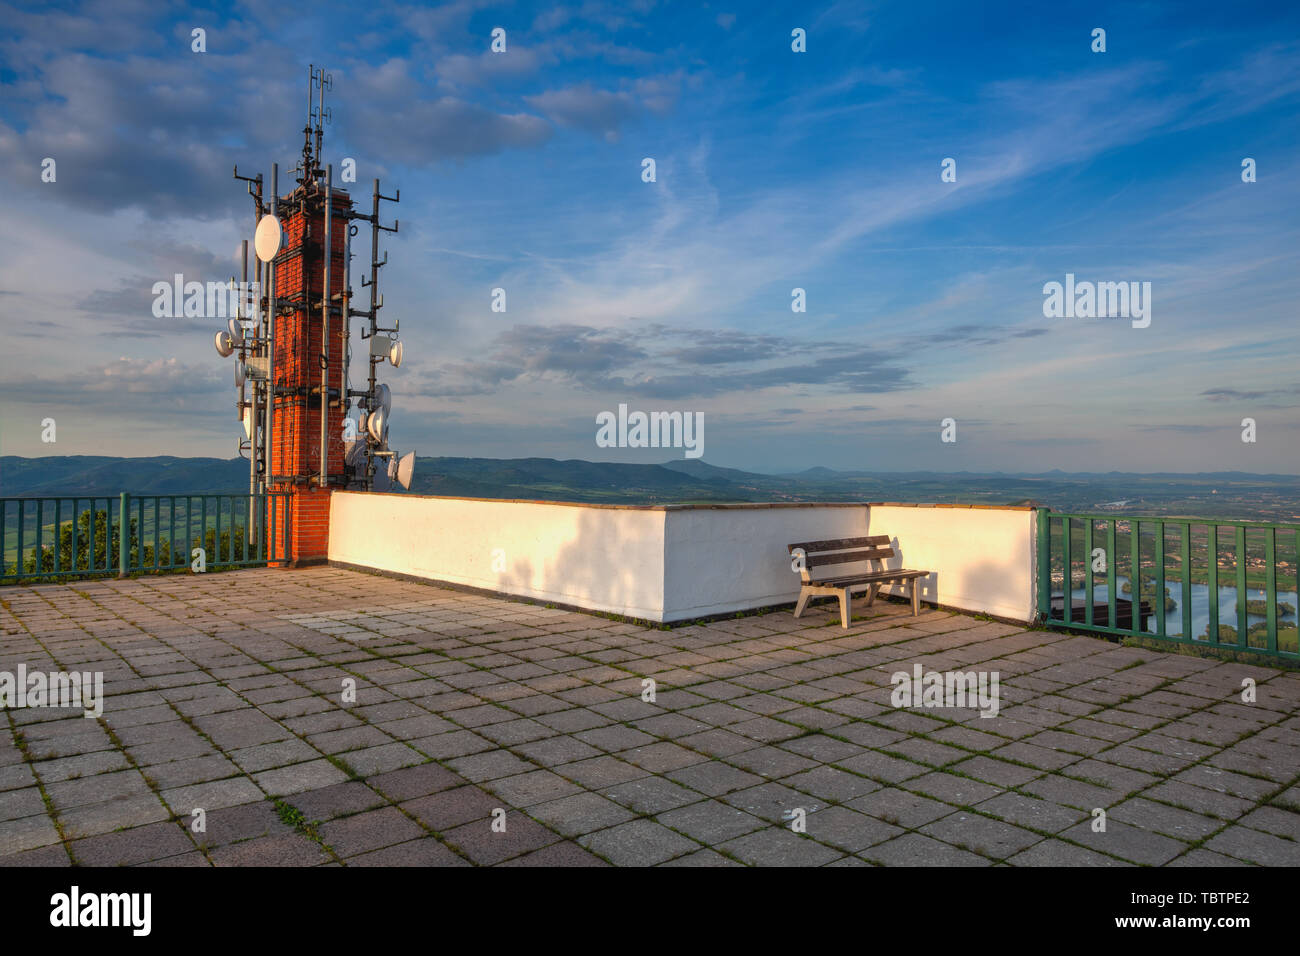 Tour de télécommunication antenne sur la colline au coucher du soleil. Système de connexion sans fil numérique d'affaires moderne.4G 5G antenne Communication tower. Communica Banque D'Images